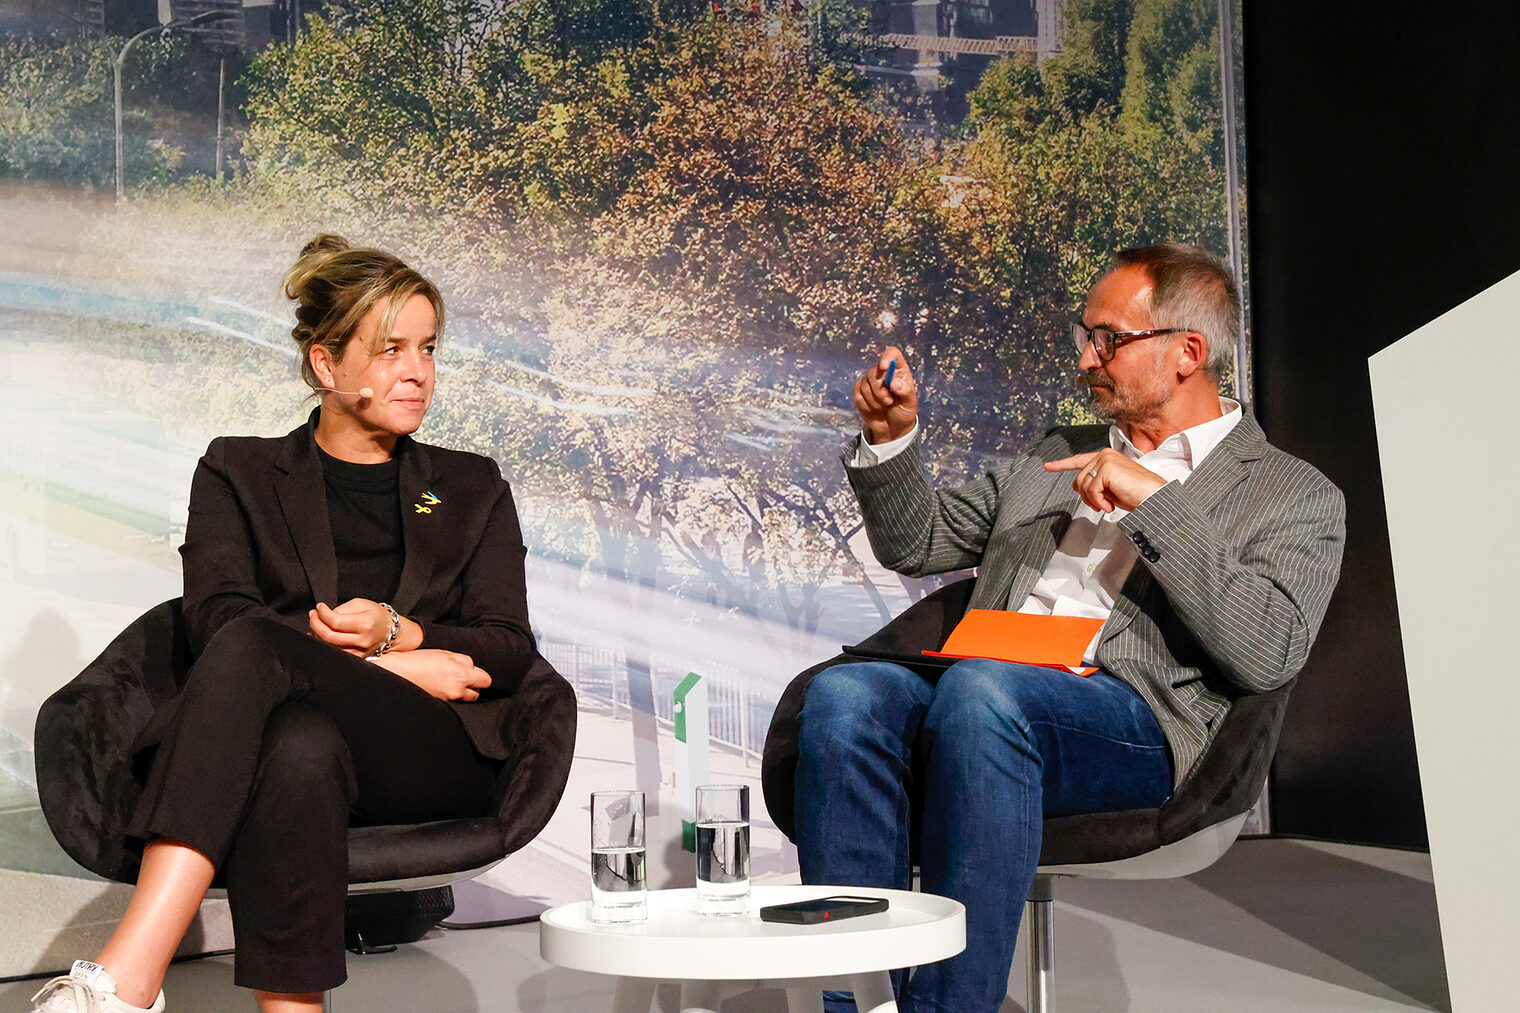 Mona Neubaur, Ministerin für Wirtschaft, Industrie, Klimaschutz und Energie des Landes Nordrhein-Westfalen, im Gespräch mit Moderator Gregor Schnittker (von links).